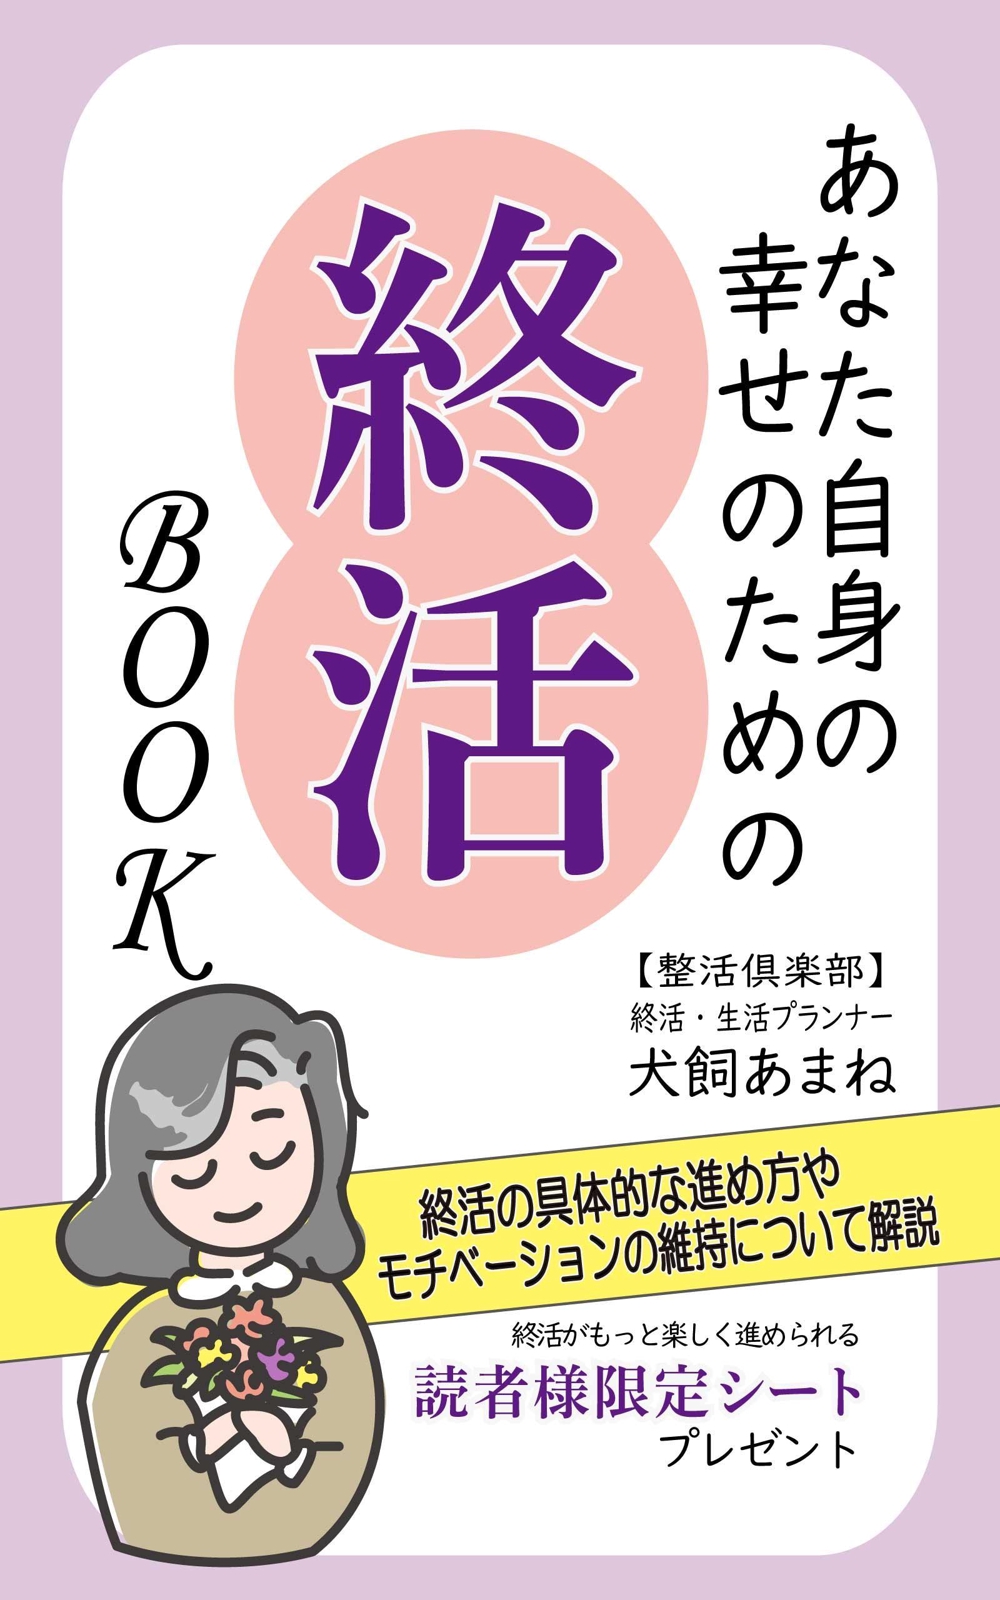 【参加賞あり〼】電子書籍 (Kindle) /表紙デザイン/女性向け終活書籍/のお願い